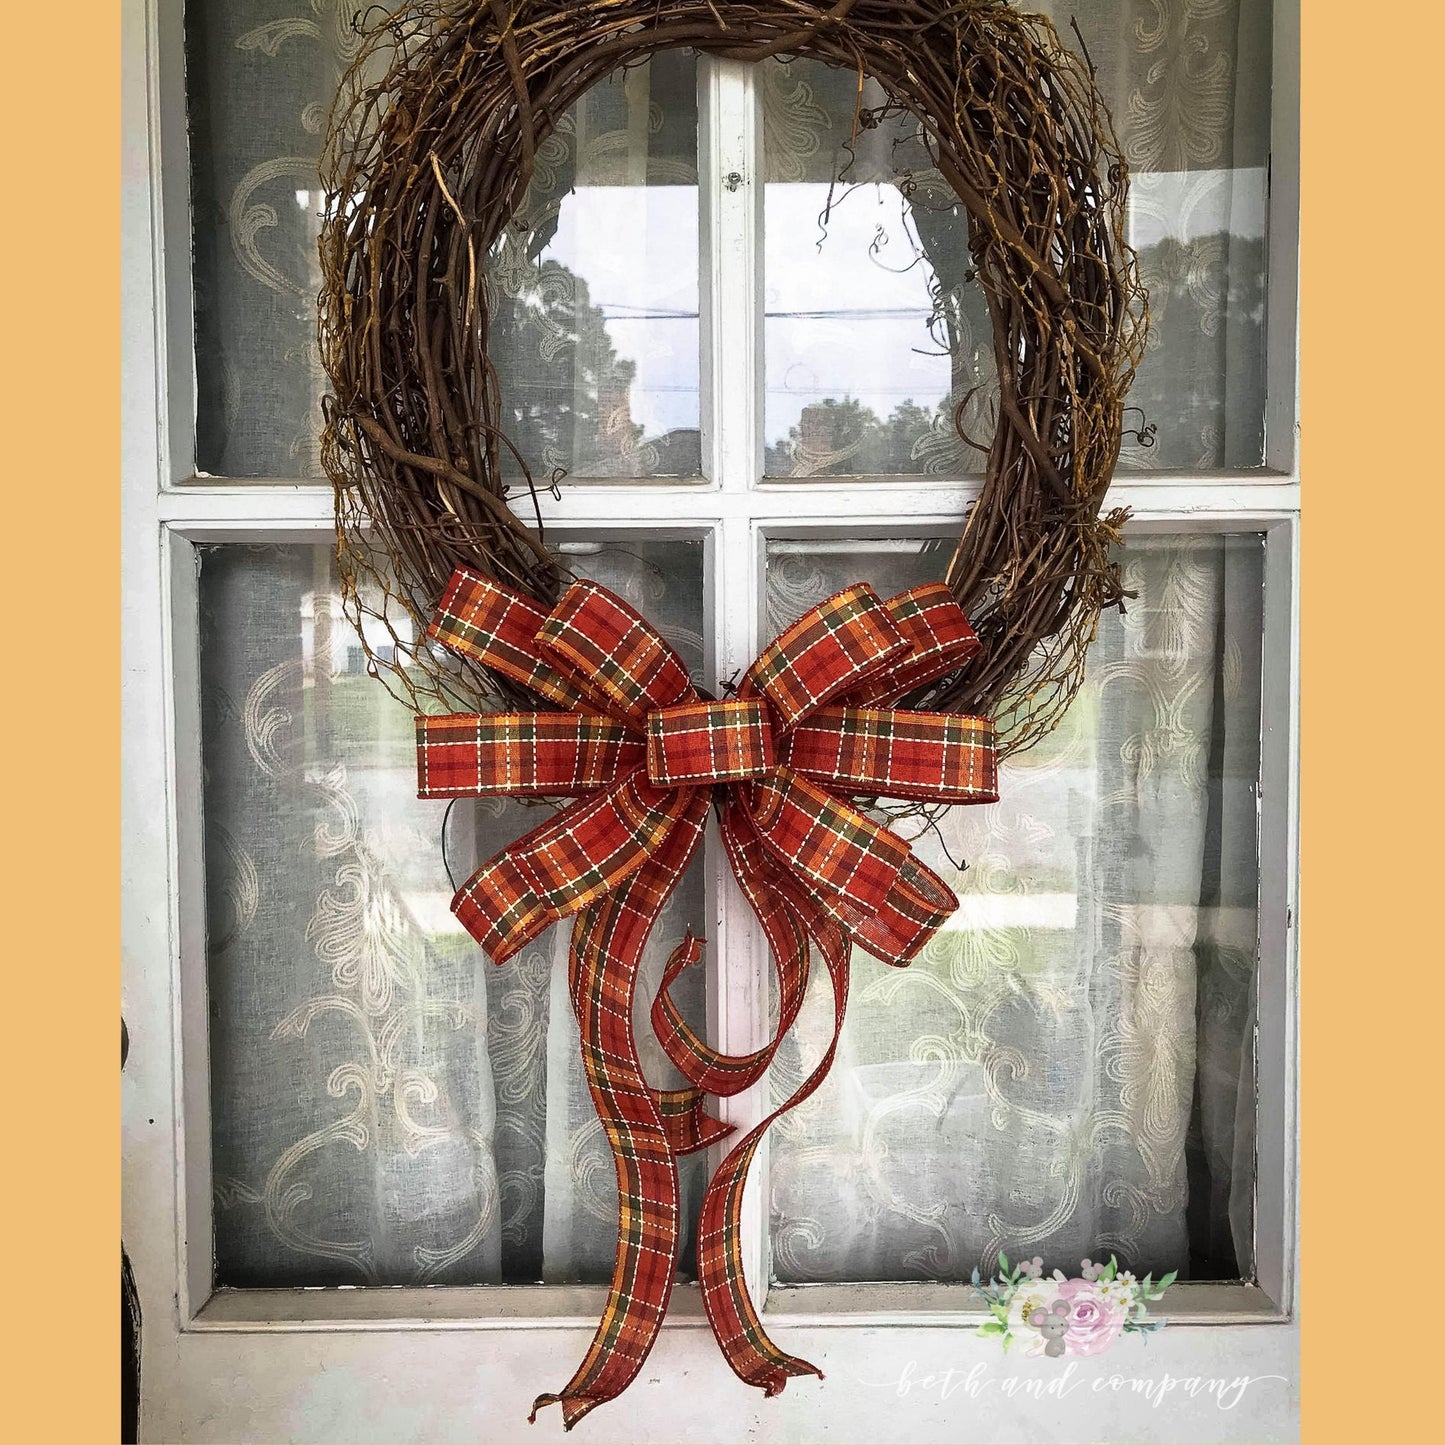 Farmhouse Fall Wreath Bow,  Thanksgiving wreath bow